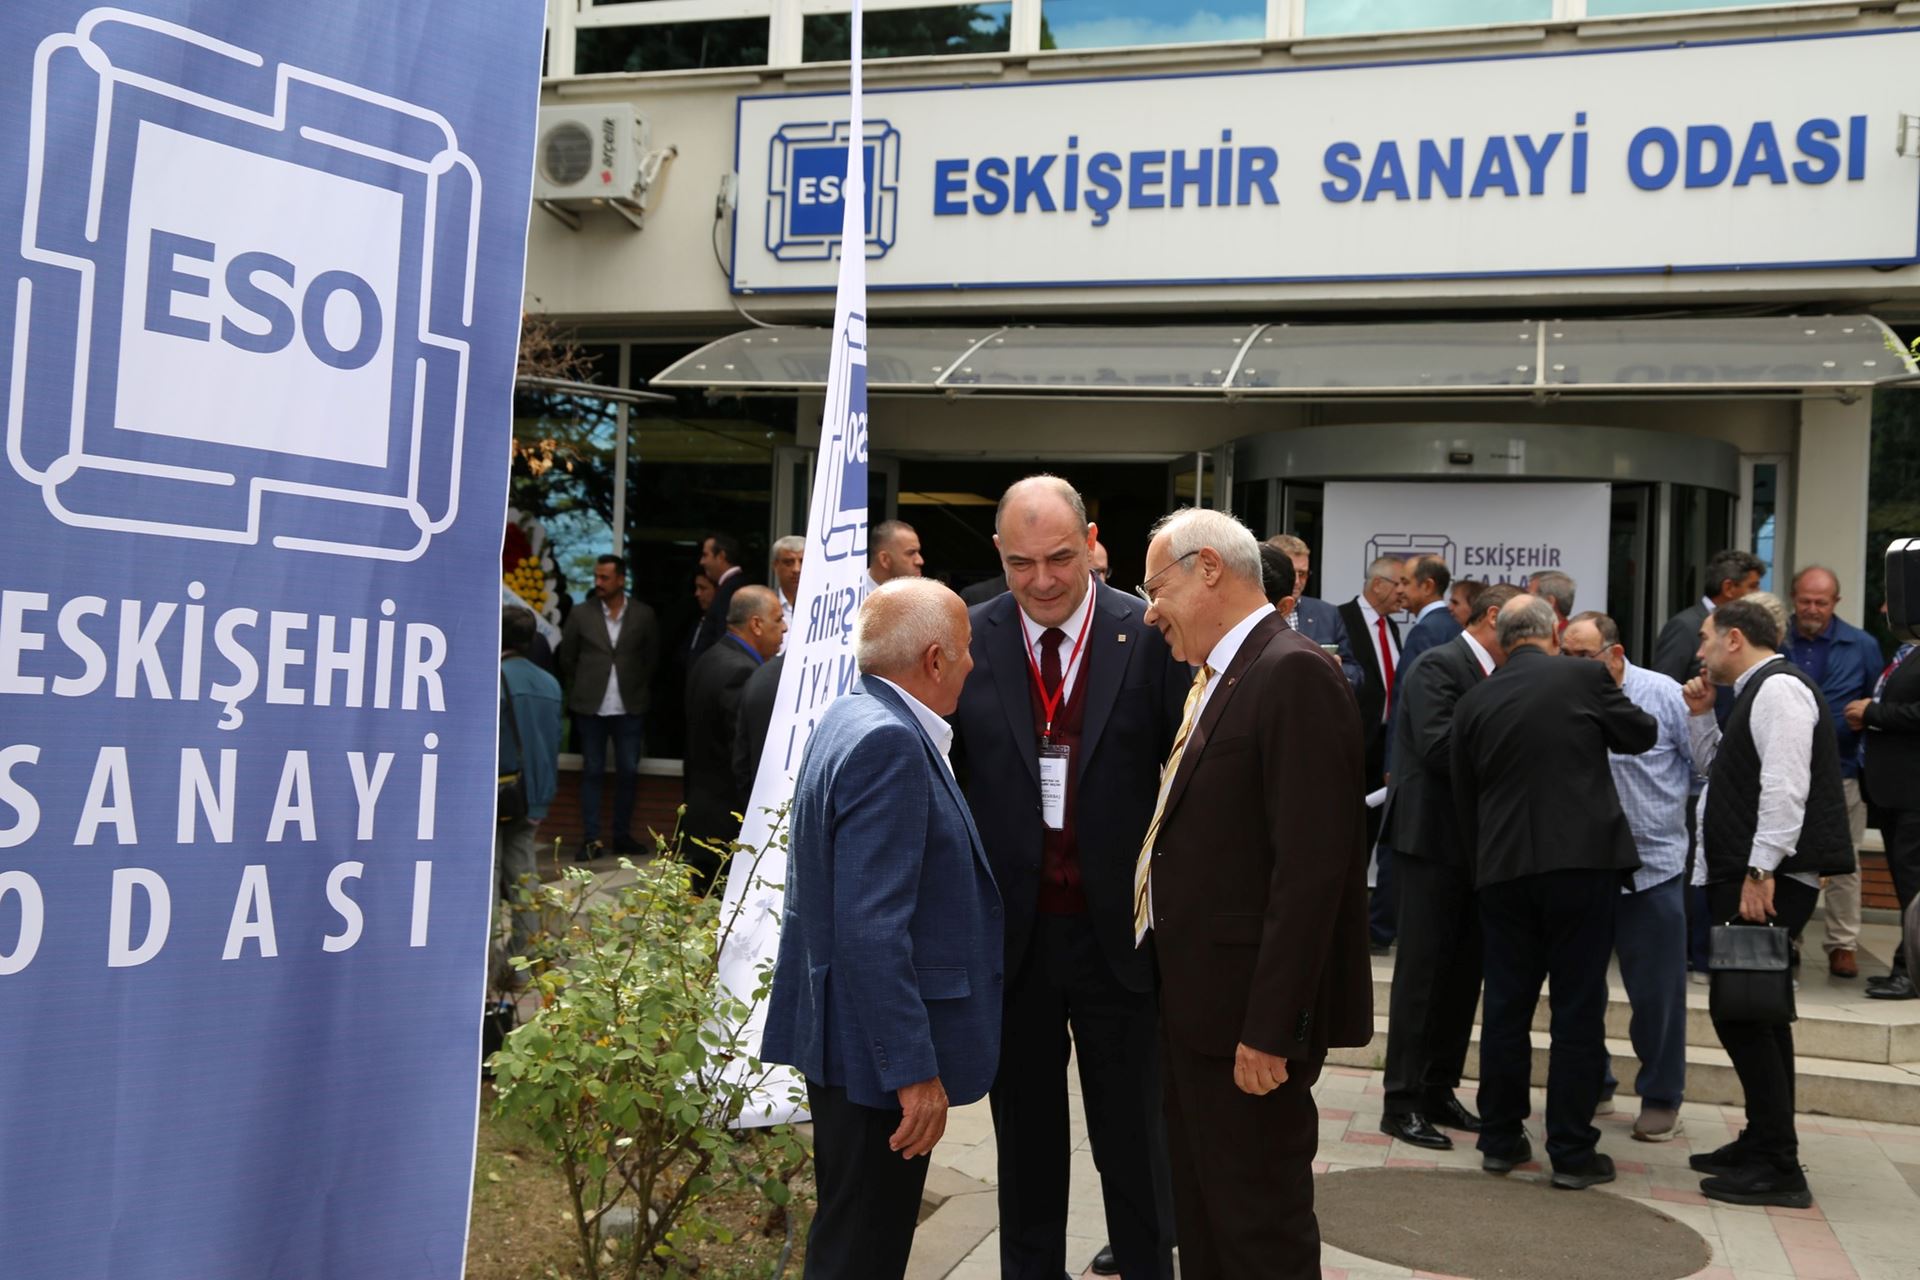 Eskişehir Chamber of Industry Prepared Green Industry Vision Document